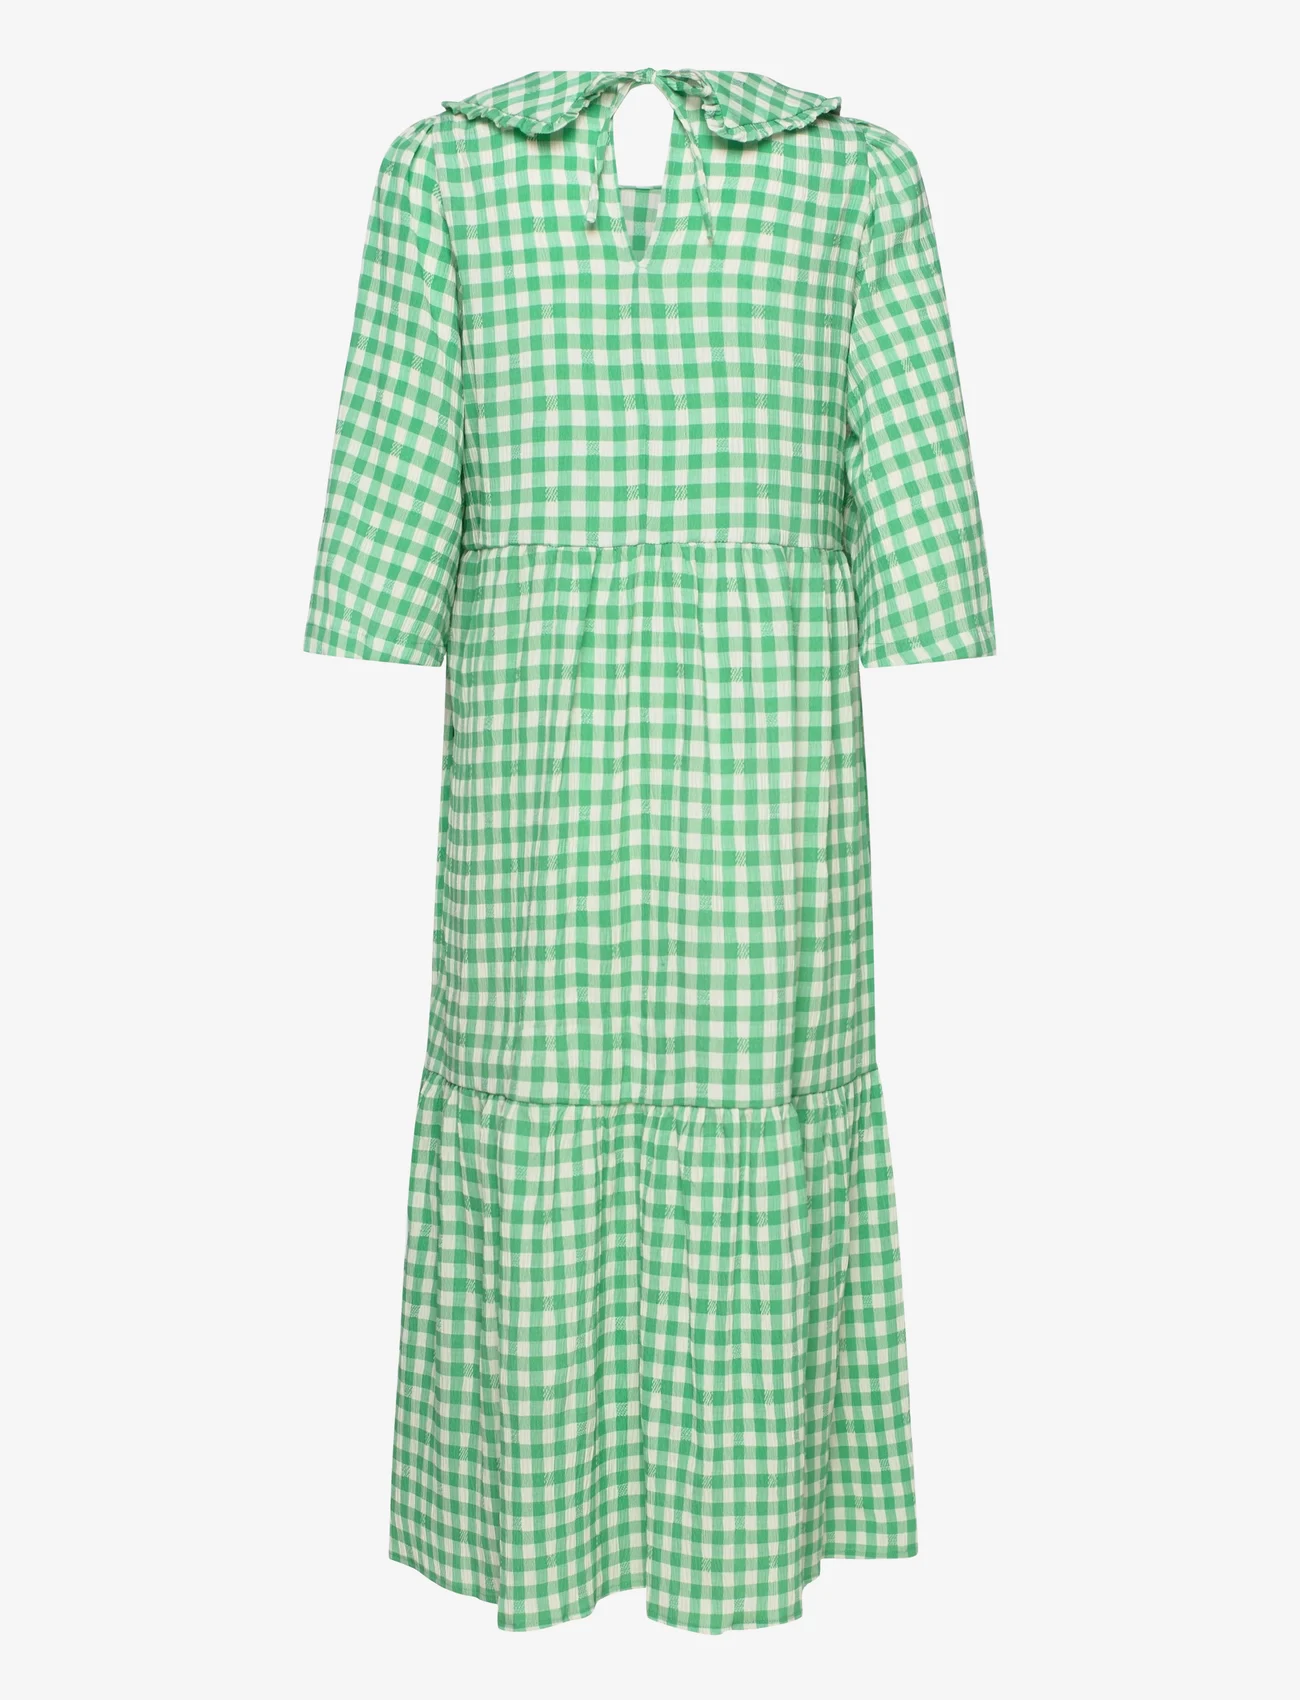 Lollys Laundry - Sonya Dress - summer dresses - 40 green - 1